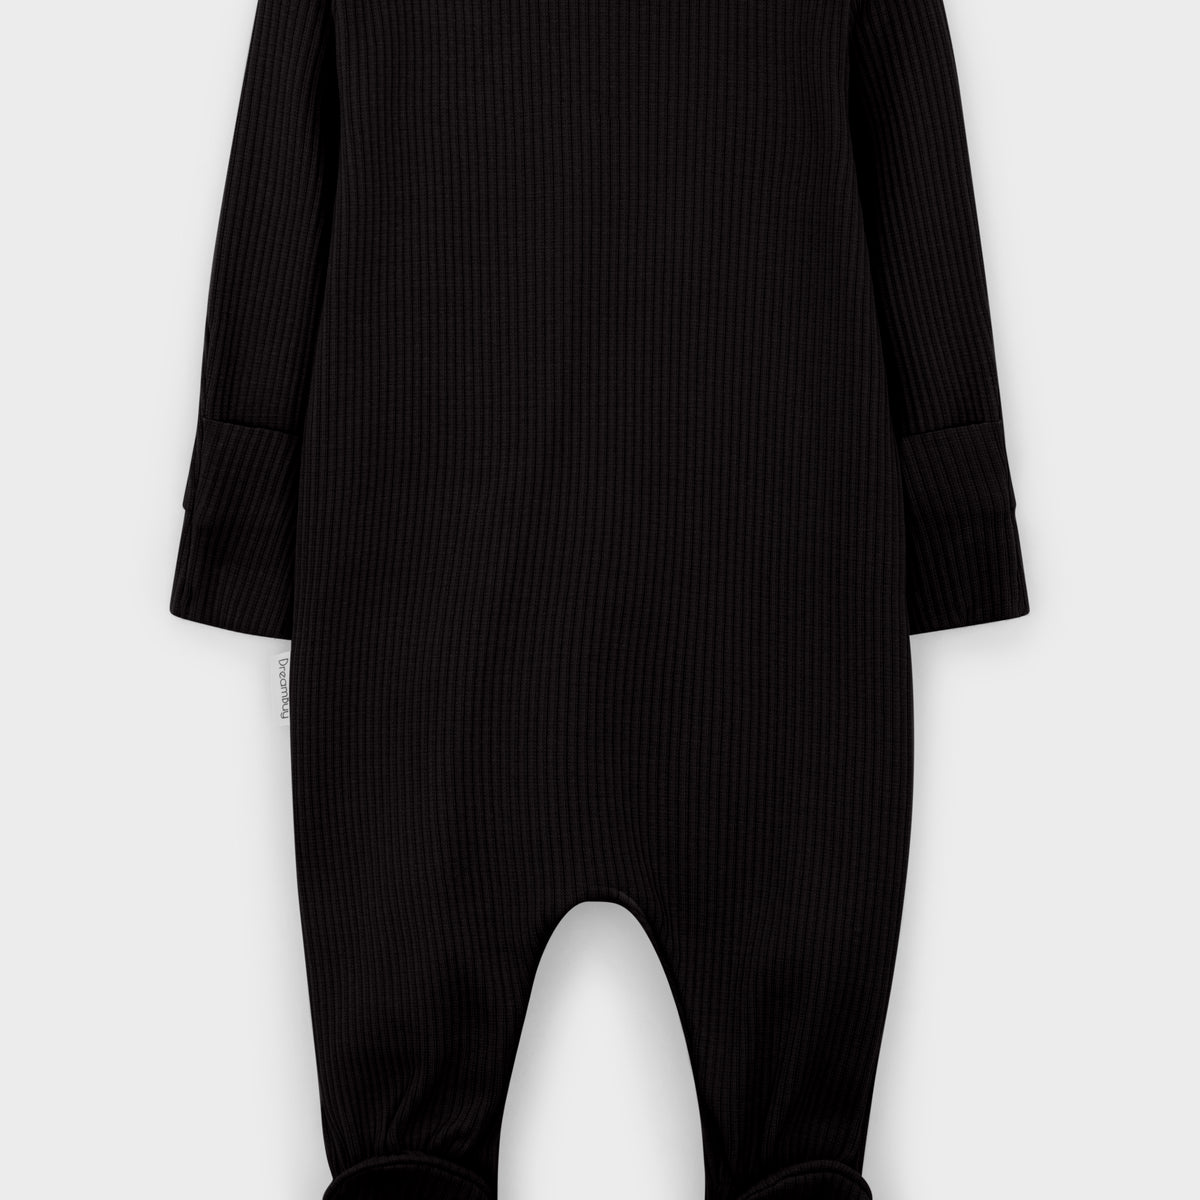 Black Zip Sleepsuit DreamBuy